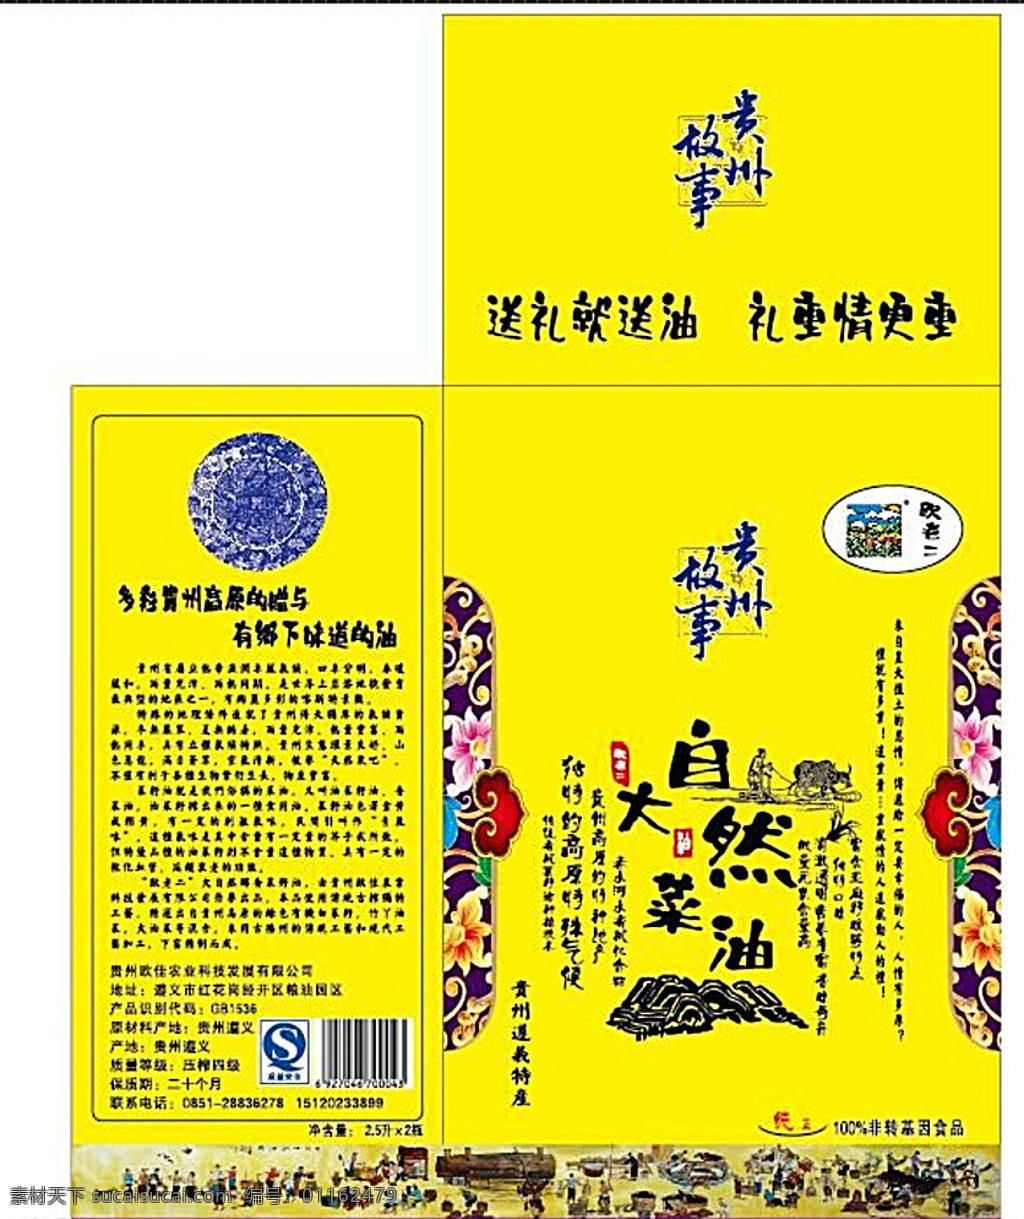 大自然菜油 大自然 菜油 贵州 故事 贵州故事 贵州遵义 包装设计 黄色